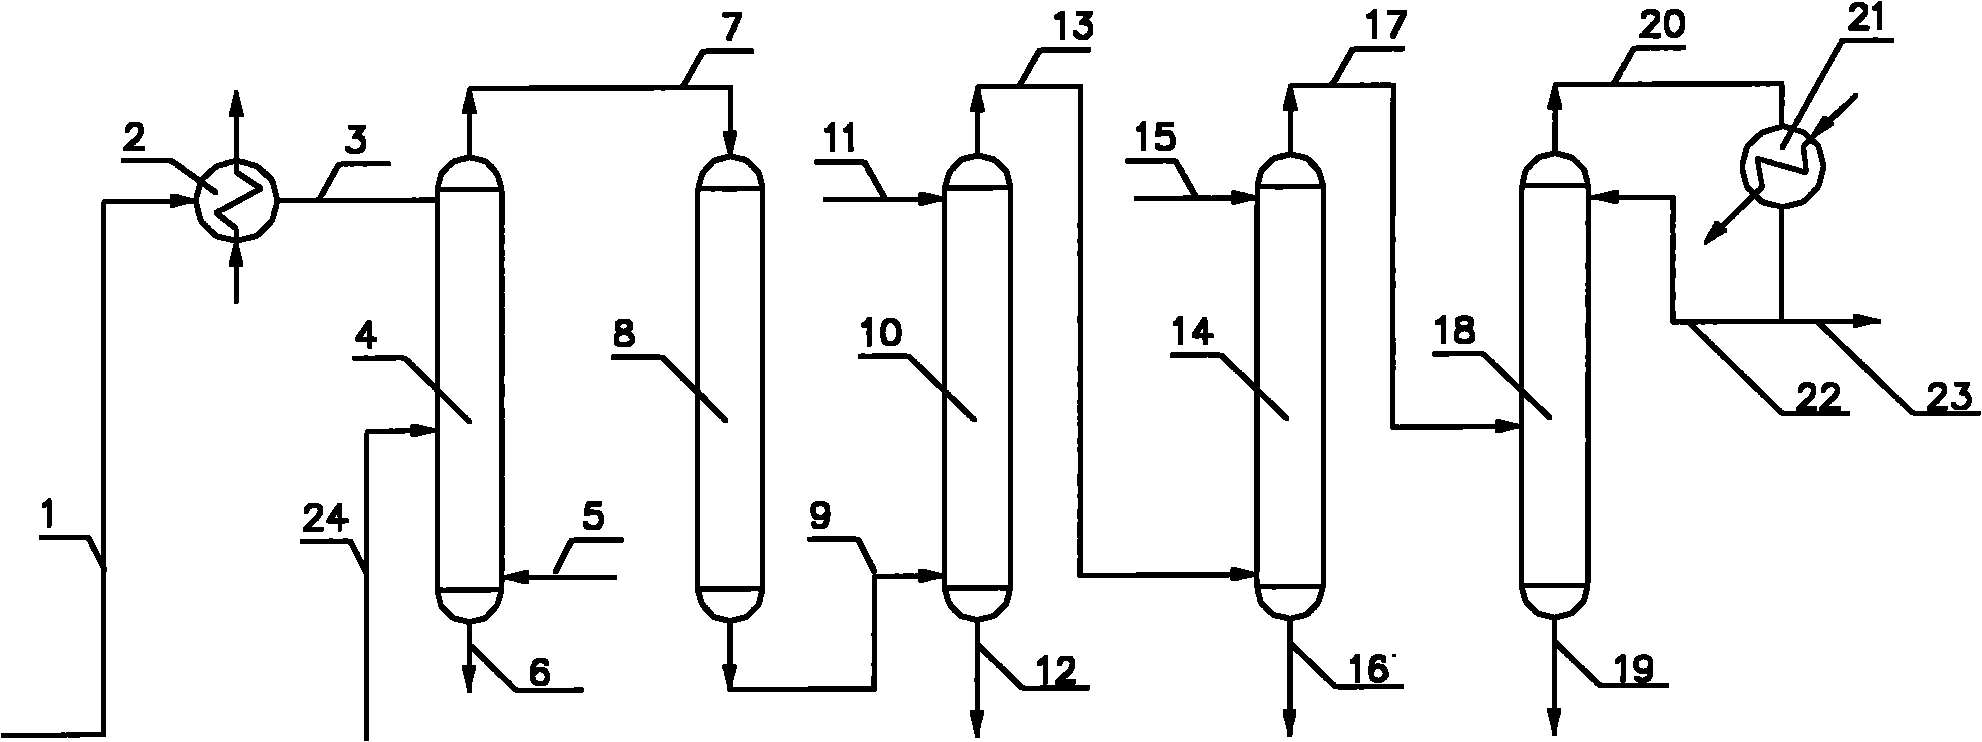 Method for preparing ethene by ethanol dehydration